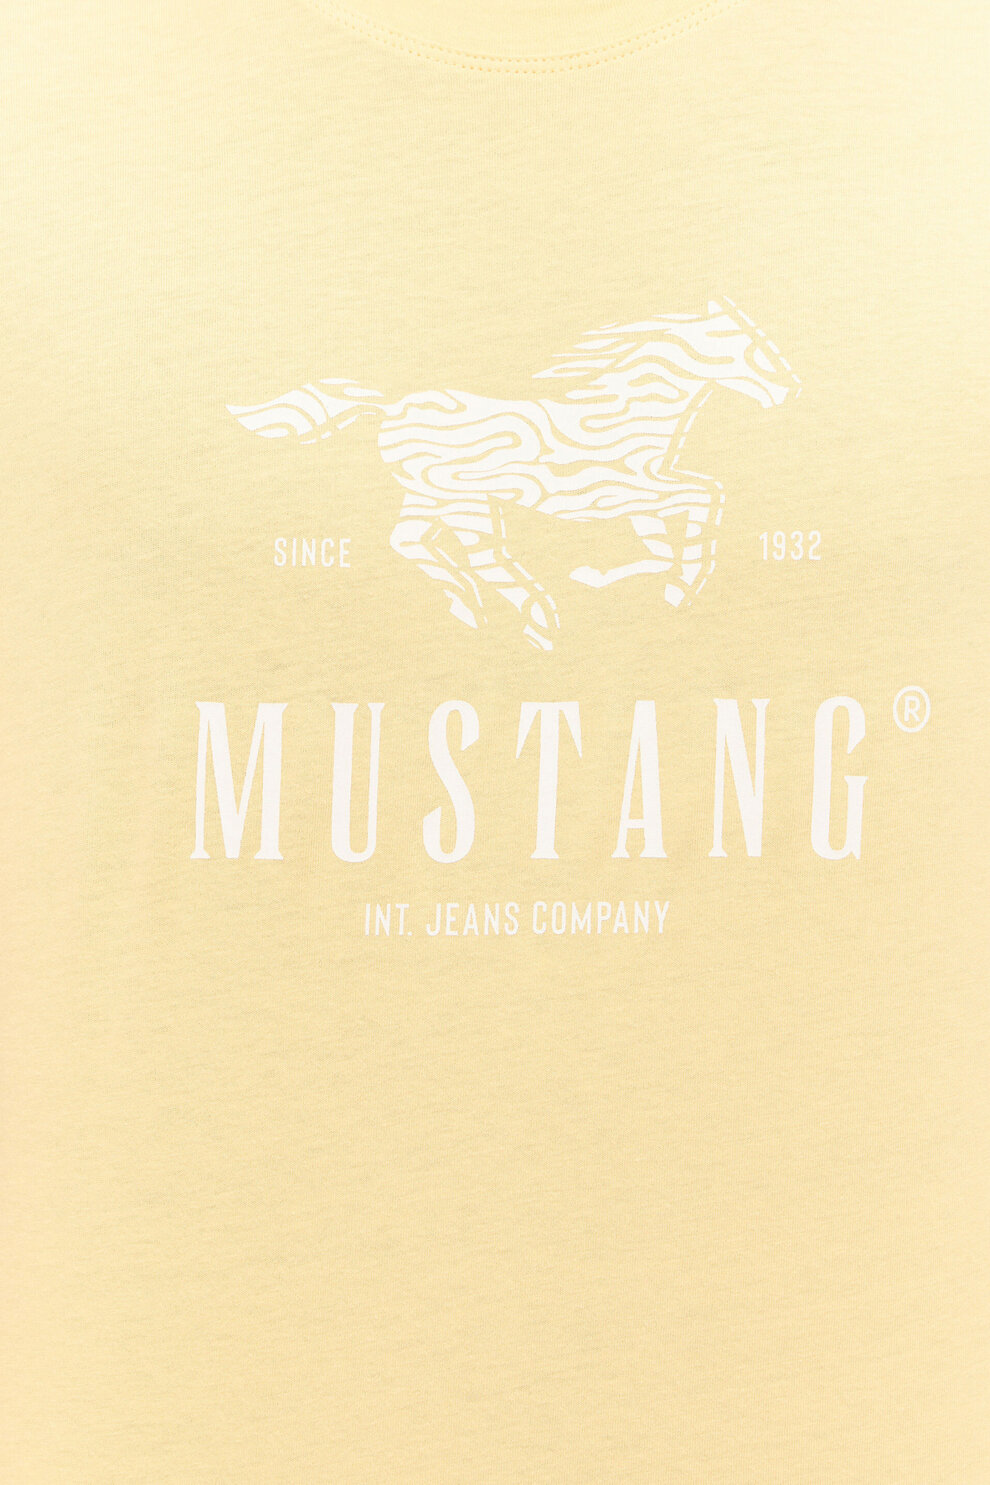 MUŠKARCI - Majice - Mustang majica - Kratki rukavi - Žuta